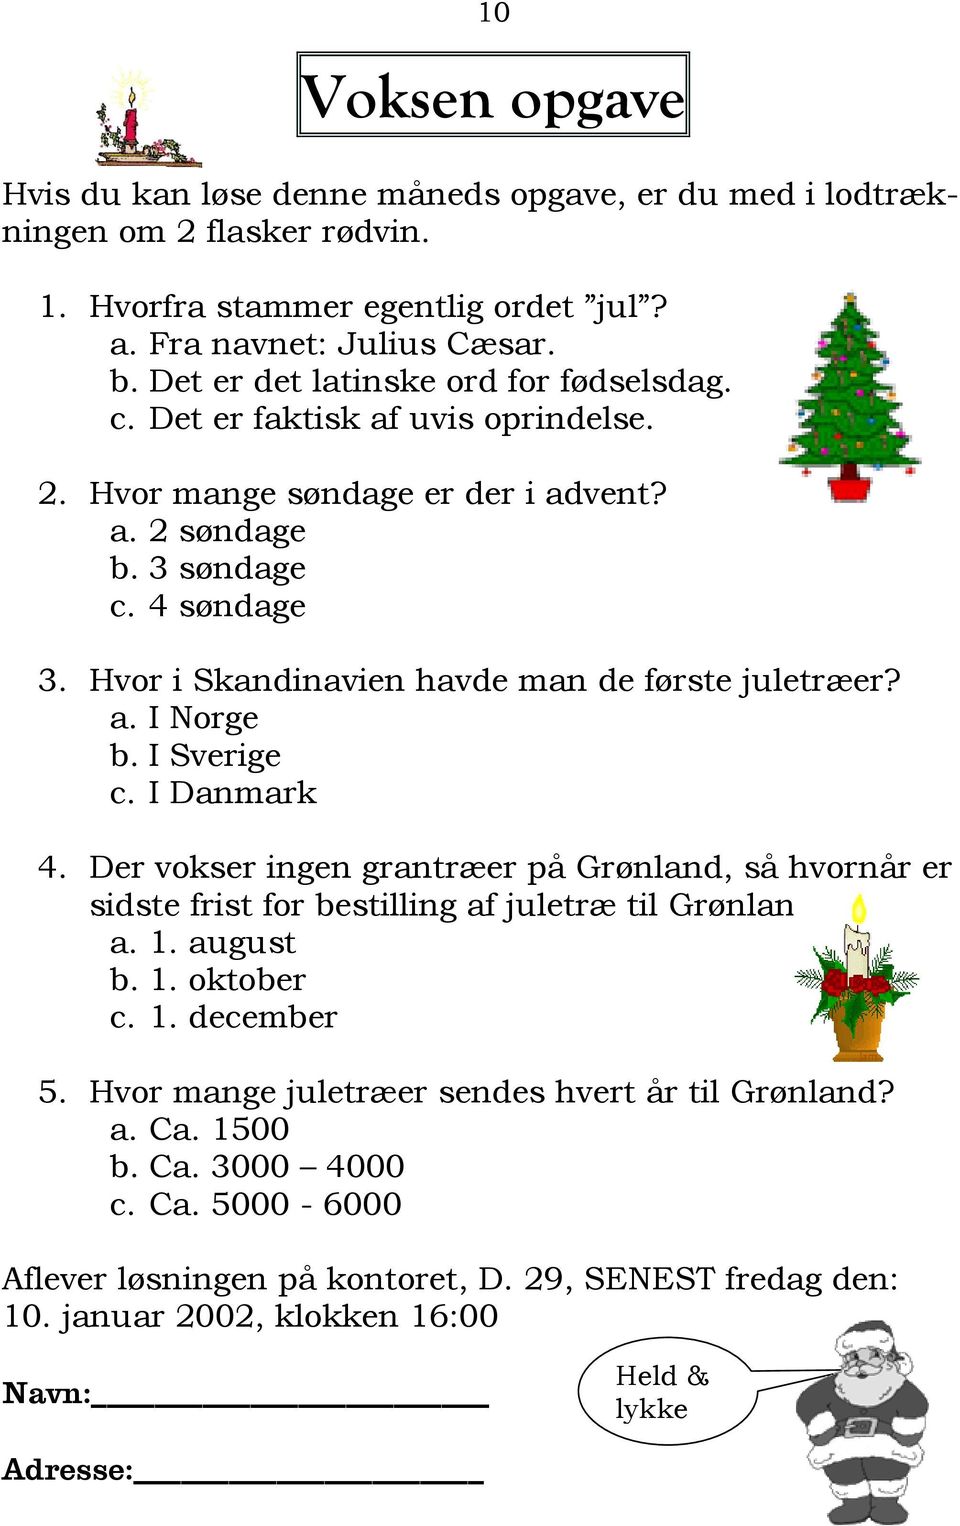 Hvor i Skandinavien havde man de første juletræer? a. I Norge b. I Sverige c. I Danmark 4. Der vokser ingen grantræer på Grønland, så hvornår er sidste frist for bestilling af juletræ til Grønland?